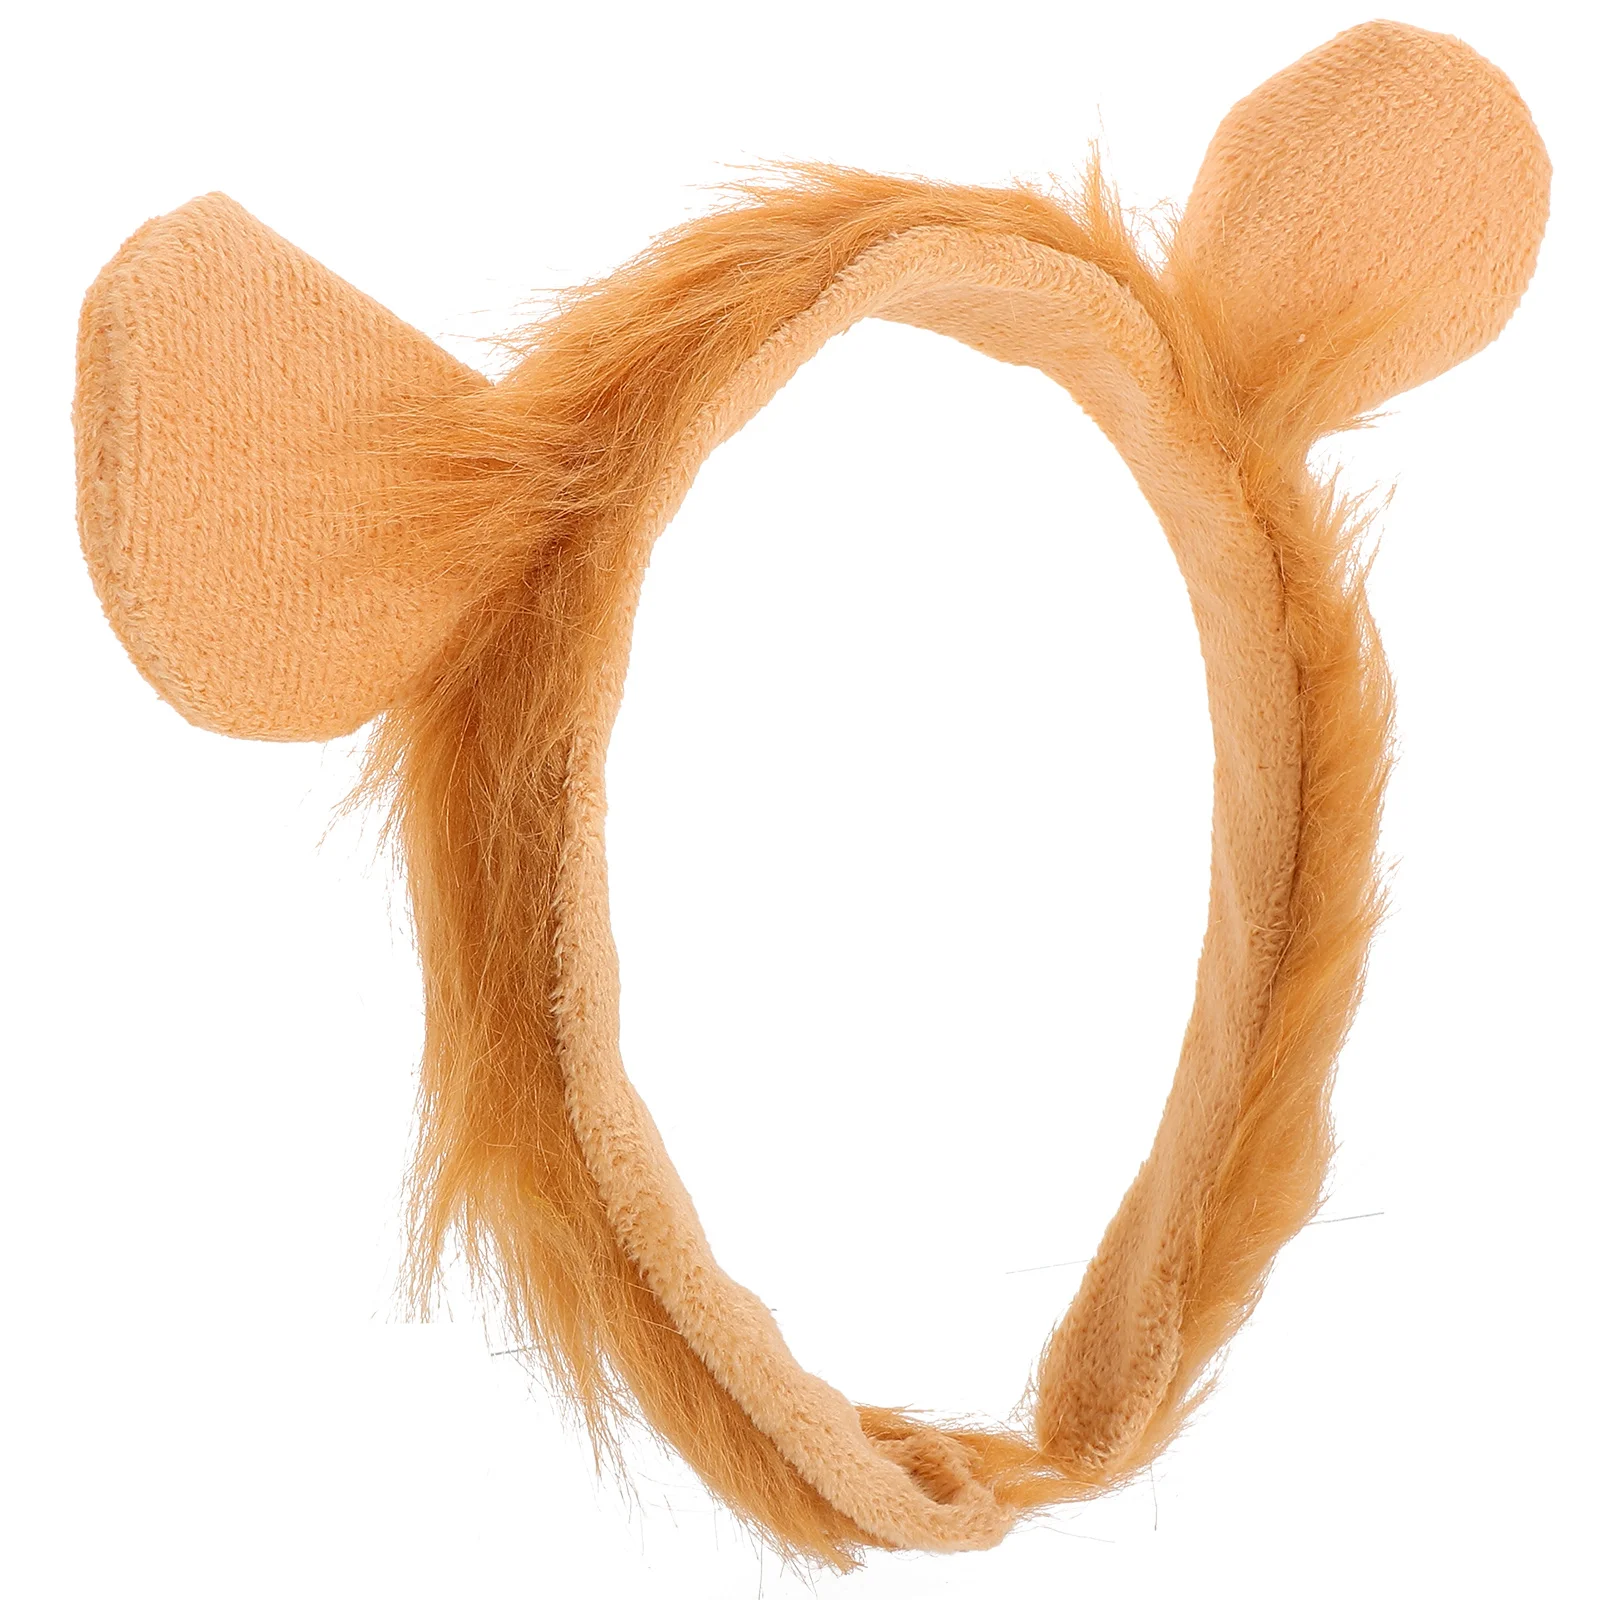 

An Fittings Ear Headbands Women Lion Ears Headpiece Cosplay Costume Accessories